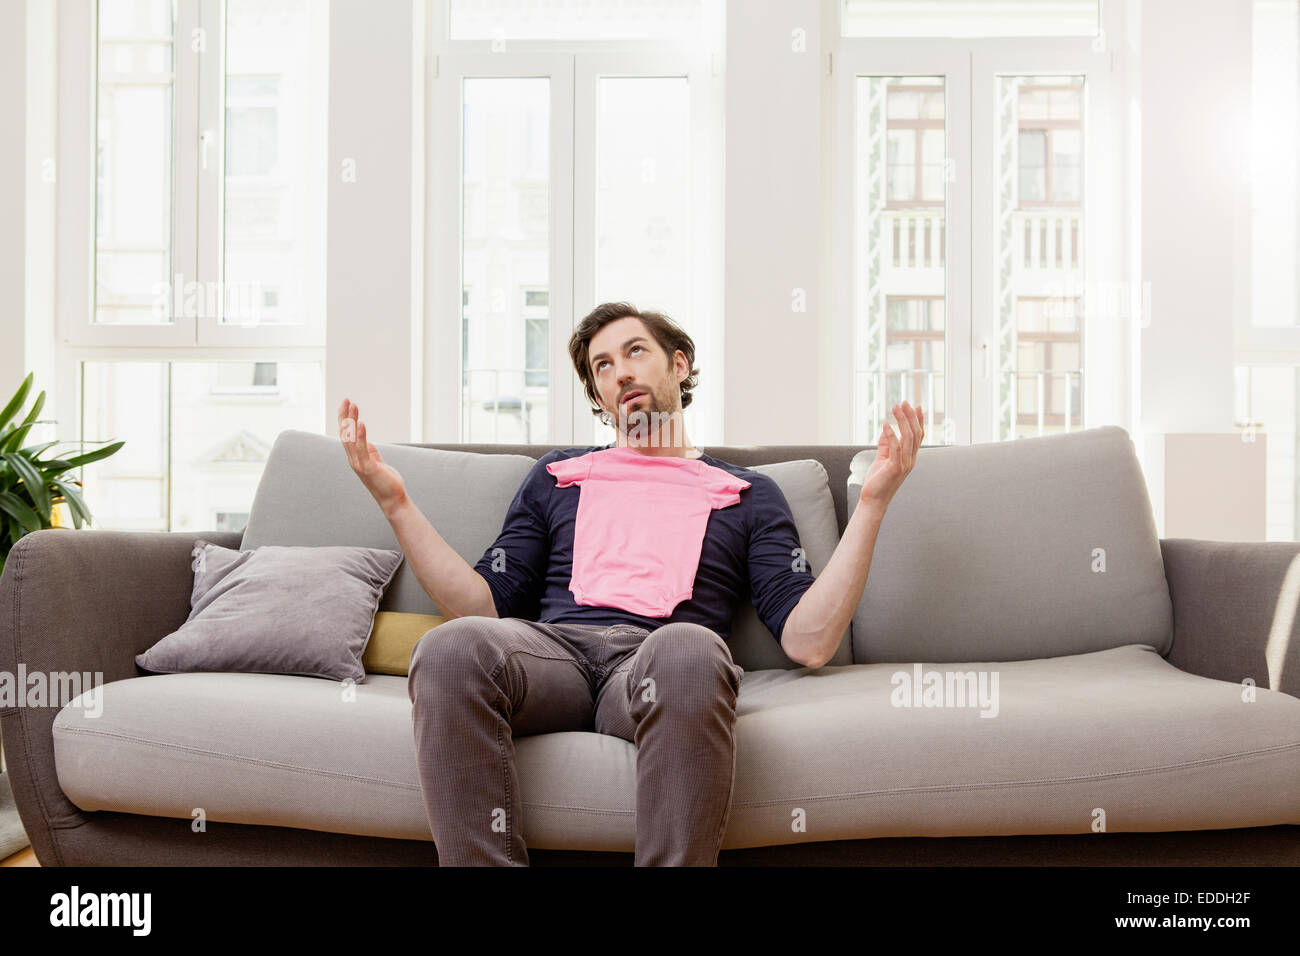 Enttäuschter Mann mit rosa Baby-Shirt auf couch Stockfoto